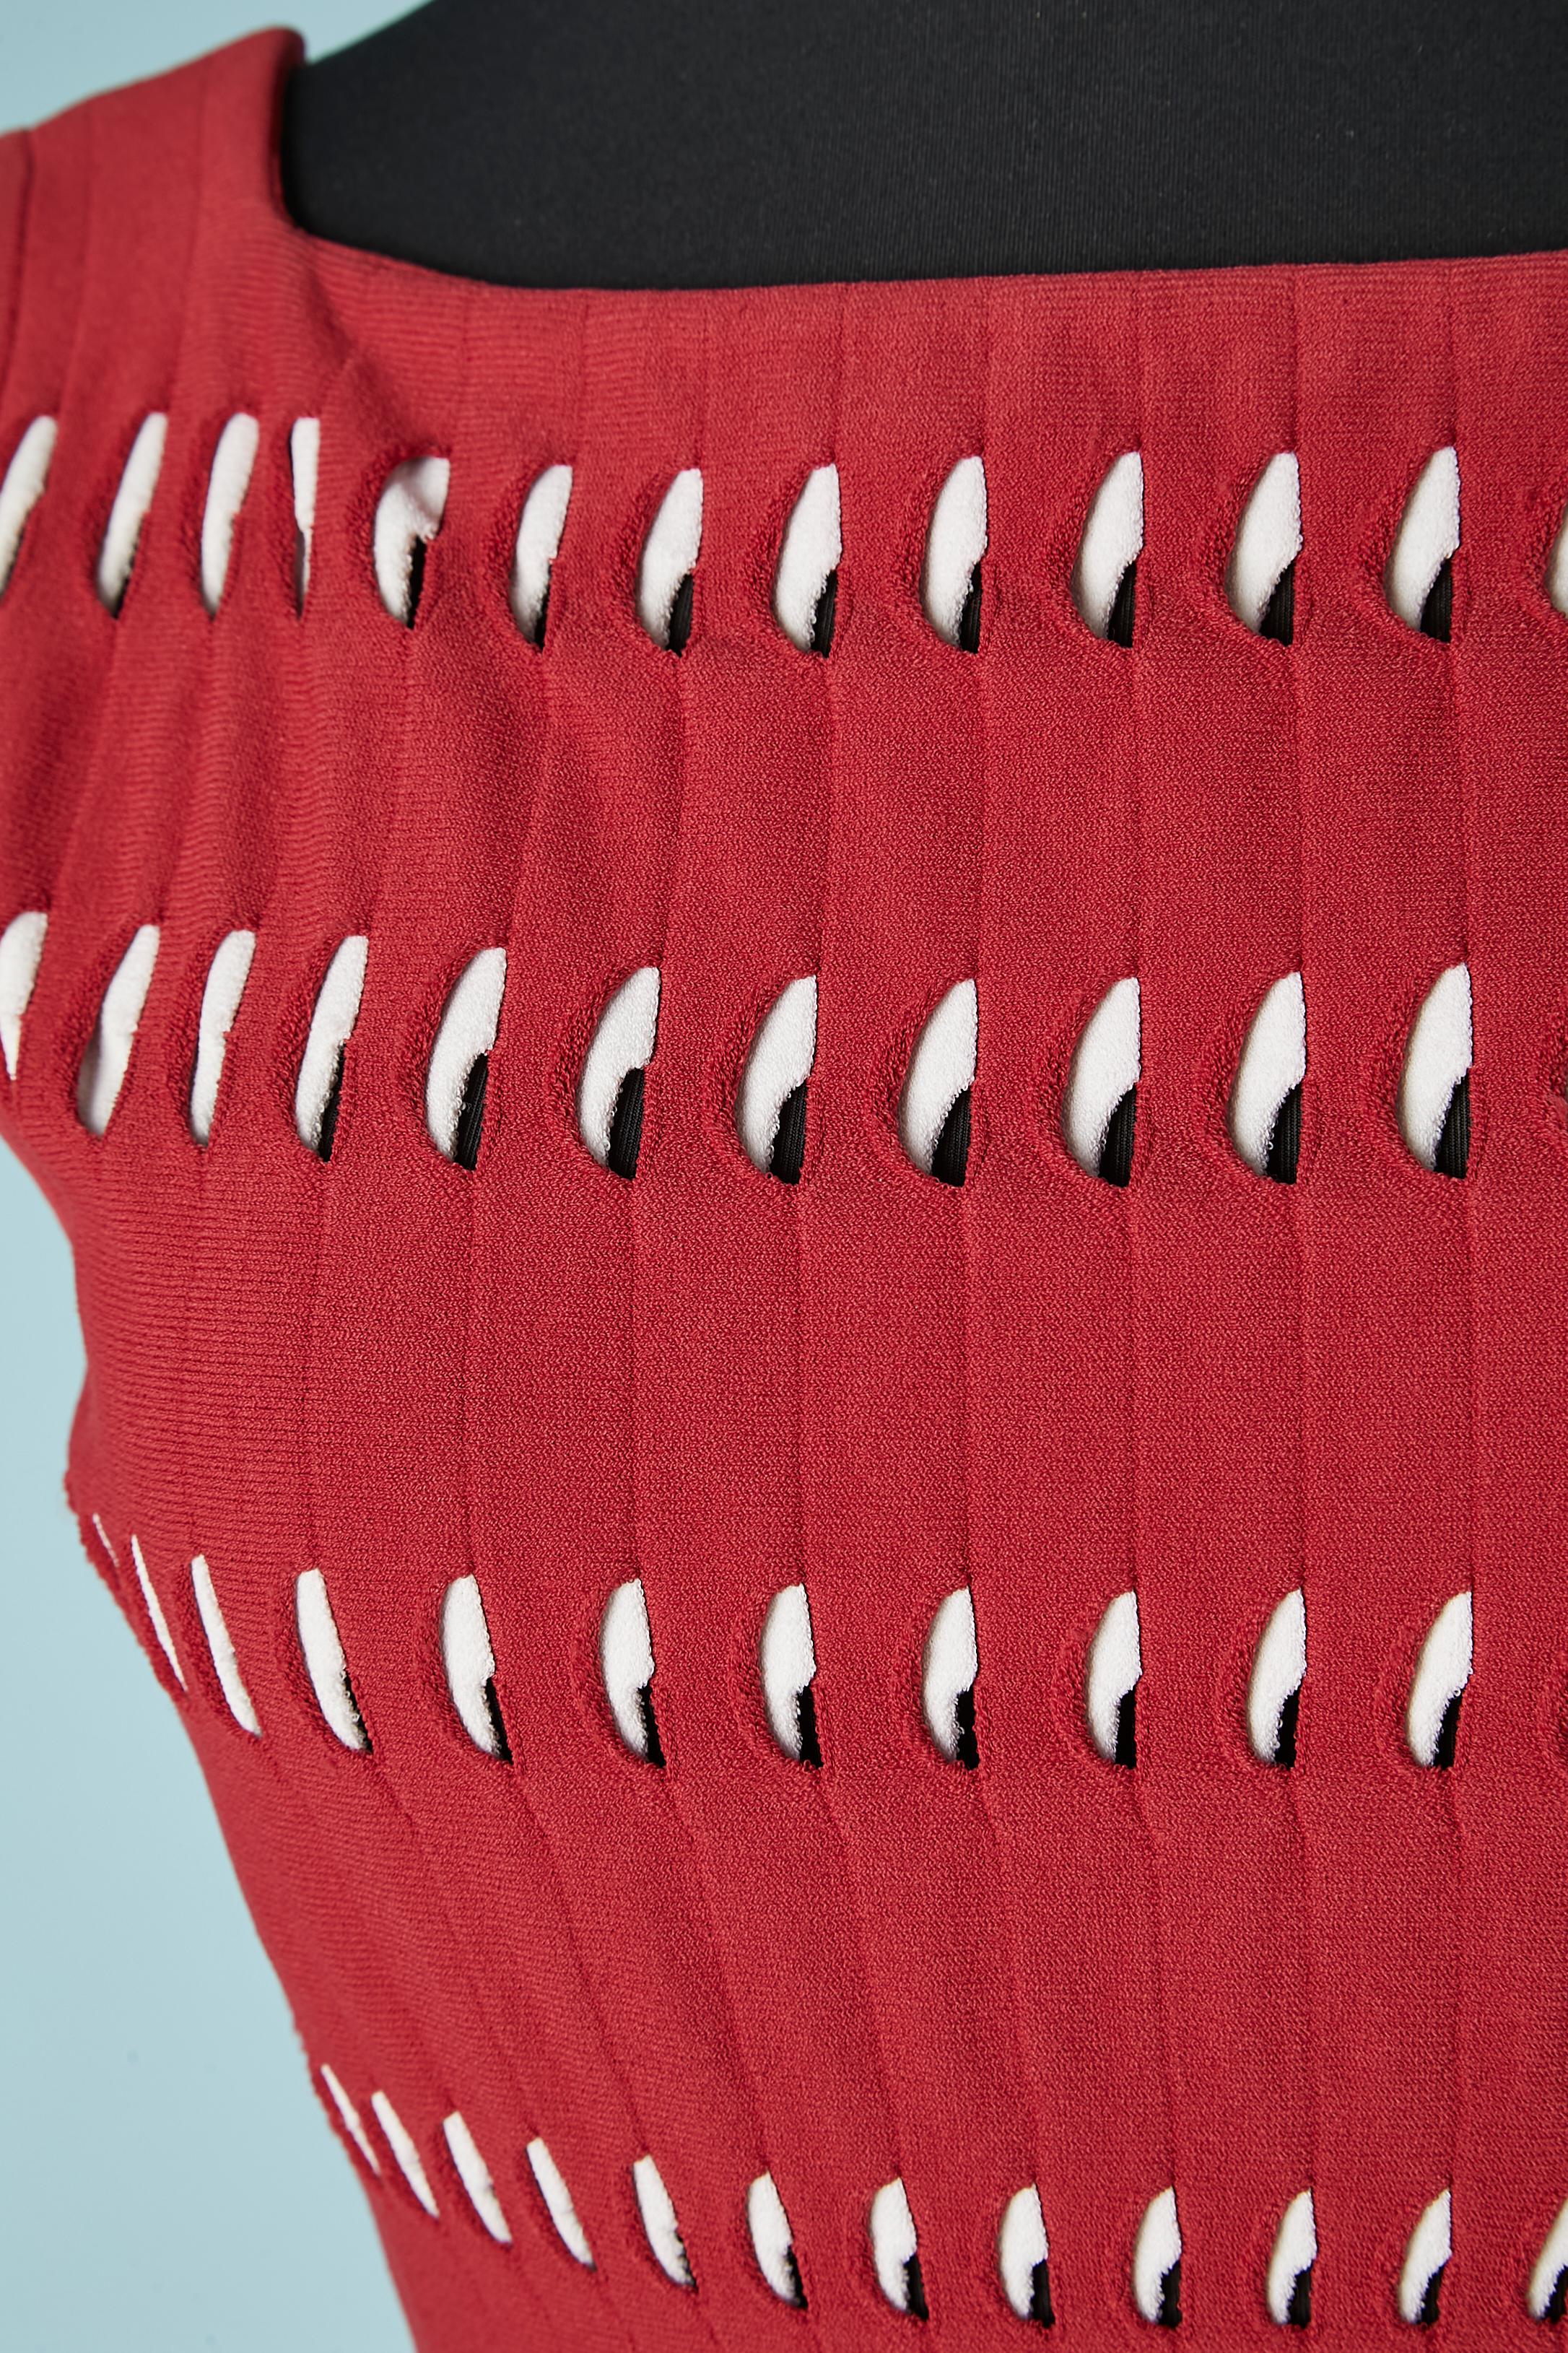 Robe en maille jacquard rouge et blanche avec ouverture ( transparente ) Zip sur le côté. Composition du tissu : 83% rayonne, 17% polyester.
Taille 42 (It) 38 (Fr) 6/8 US